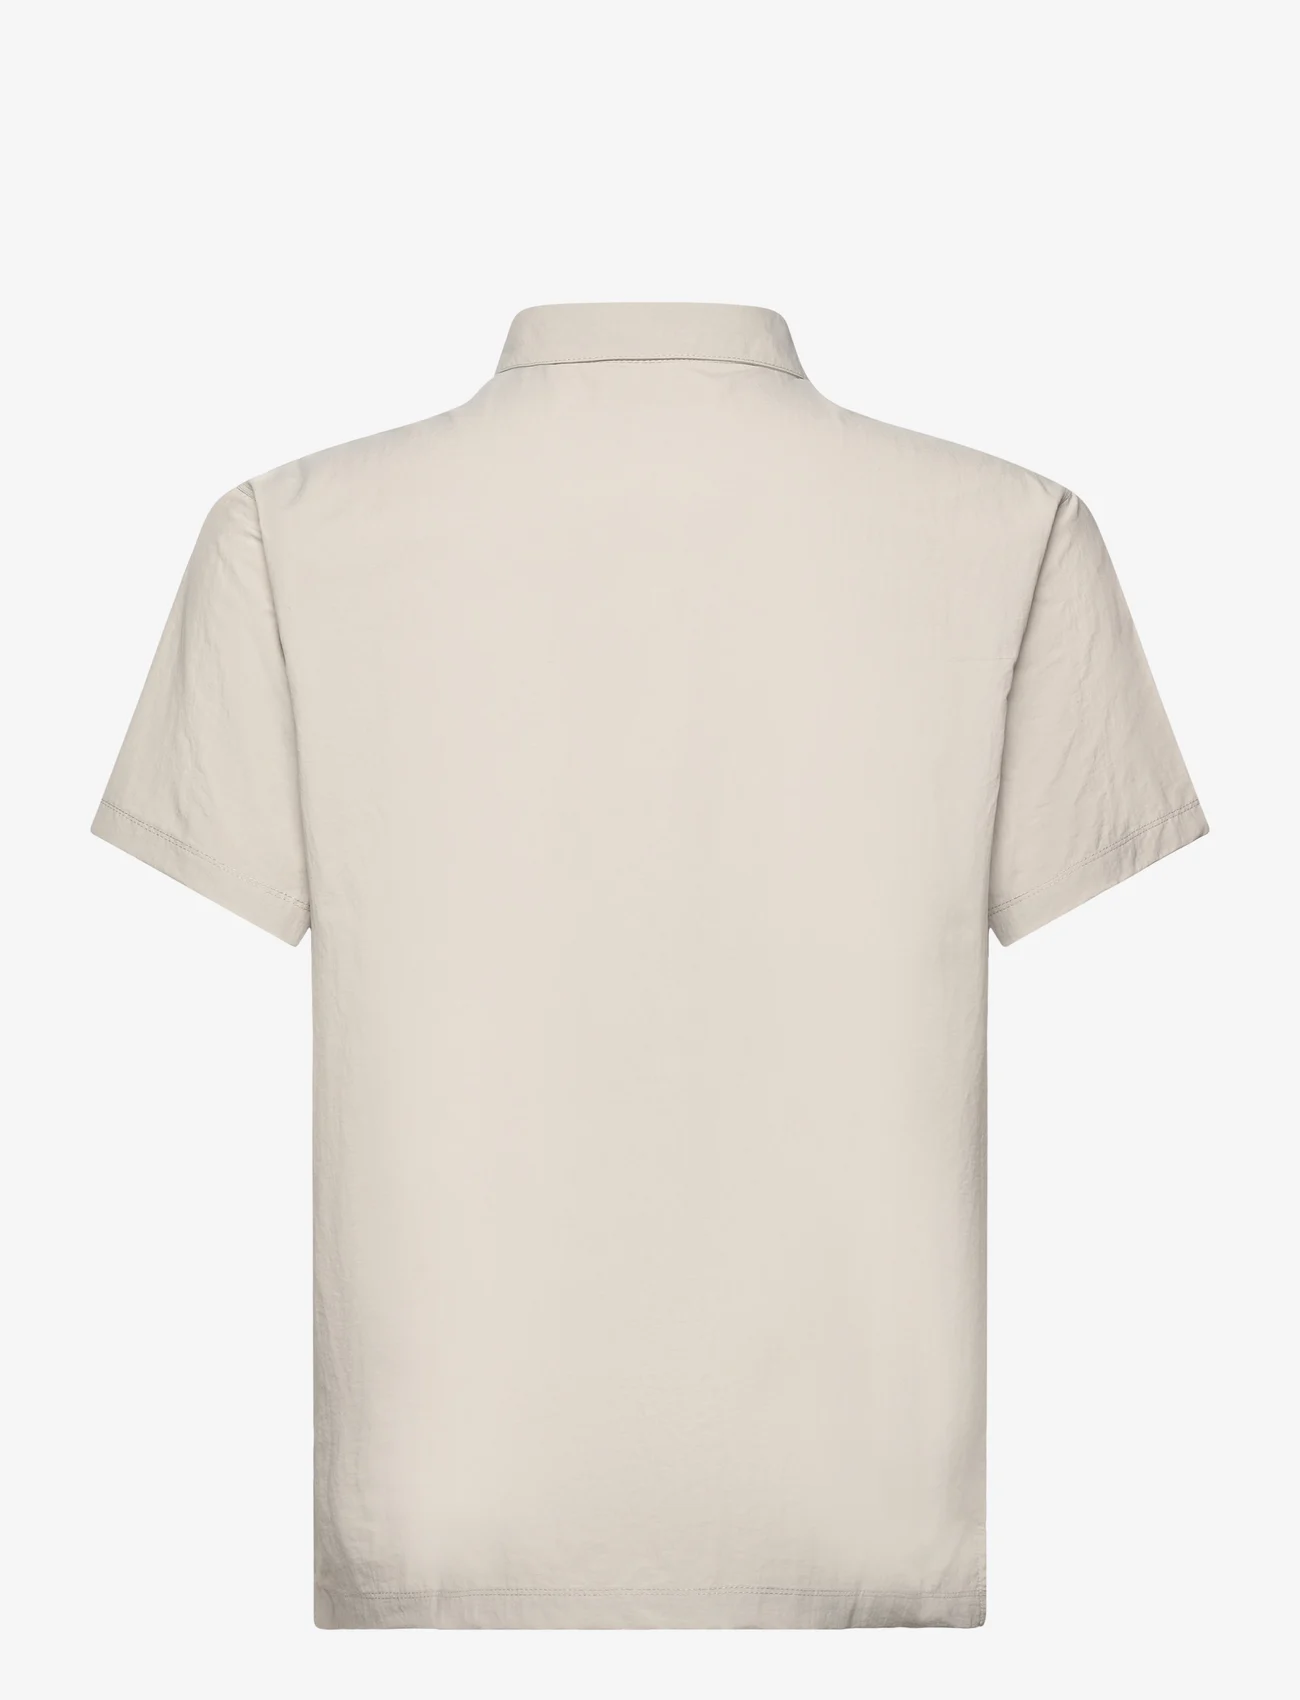 Columbia Sportswear - Mountaindale Outdoor SS Shirt - laisvalaikio marškiniai - flint grey - 1